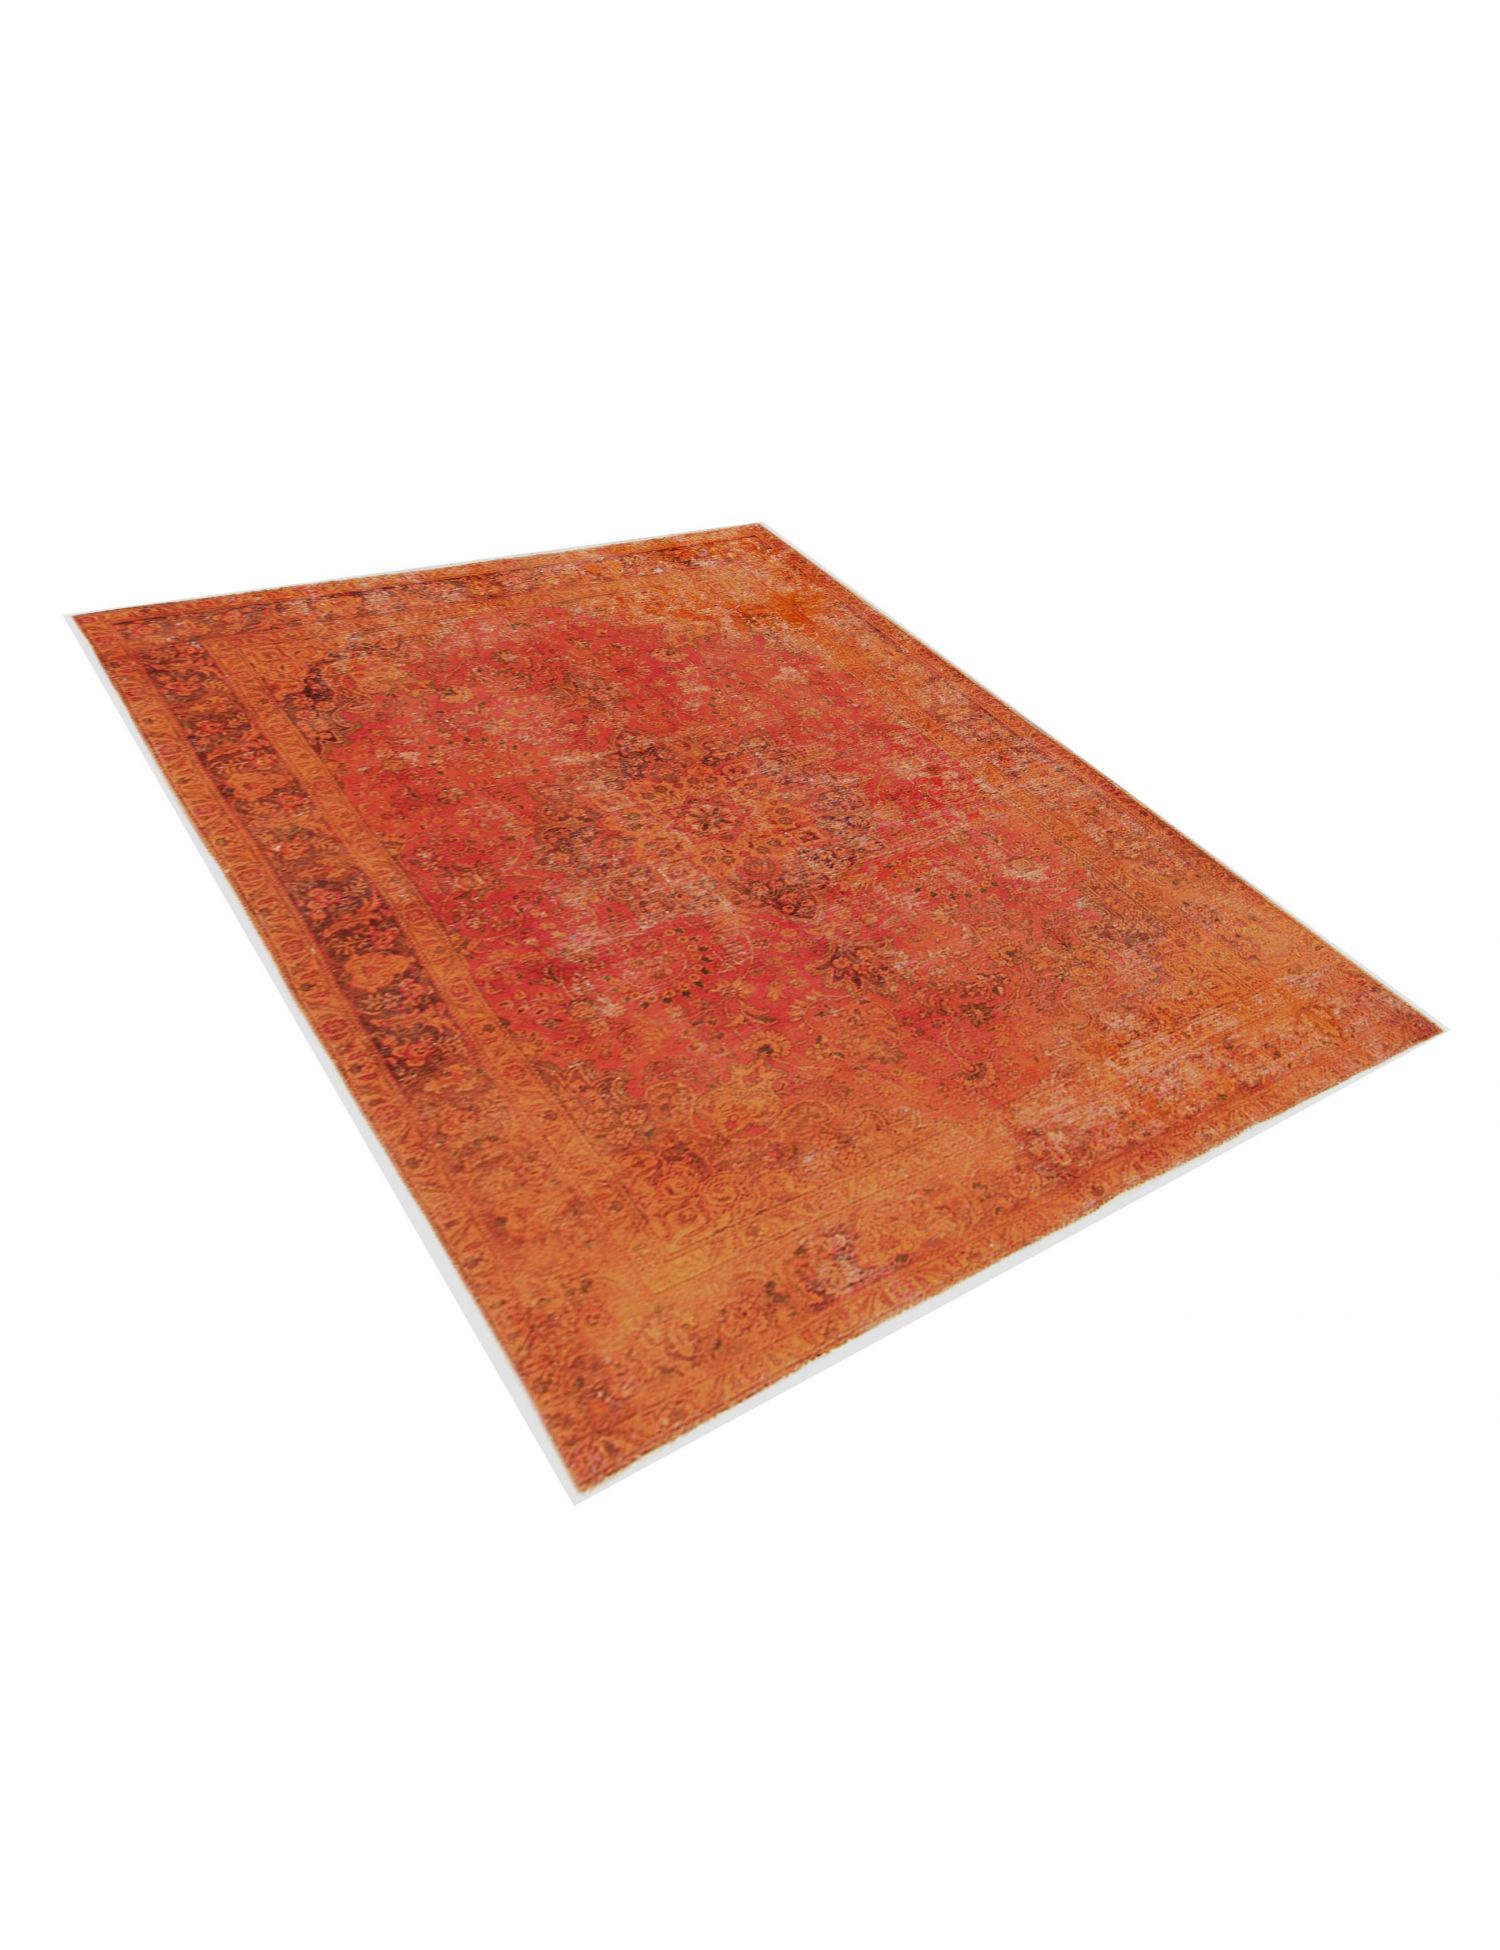 Persischer Vintage Teppich  orange <br/>305 x 200 cm